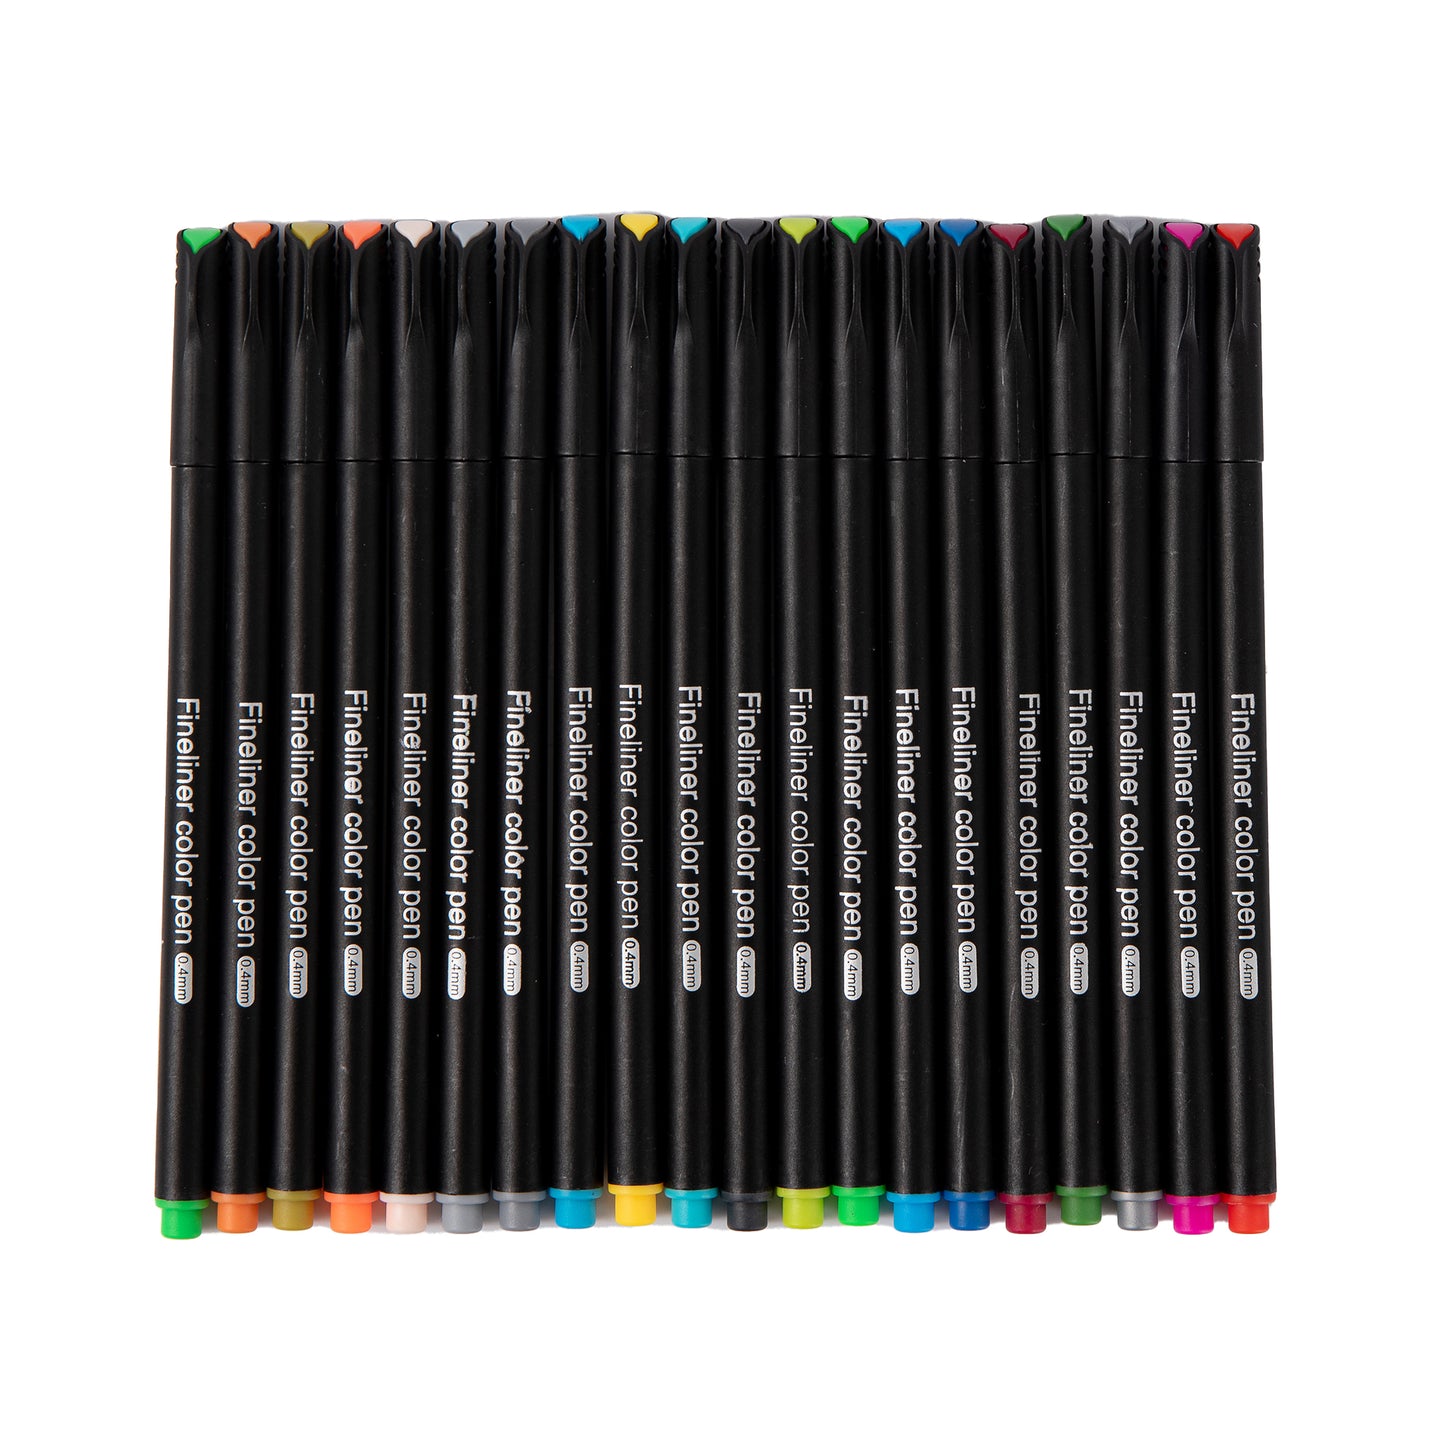 Fineliner Pen - Set of 48 - Bright Color